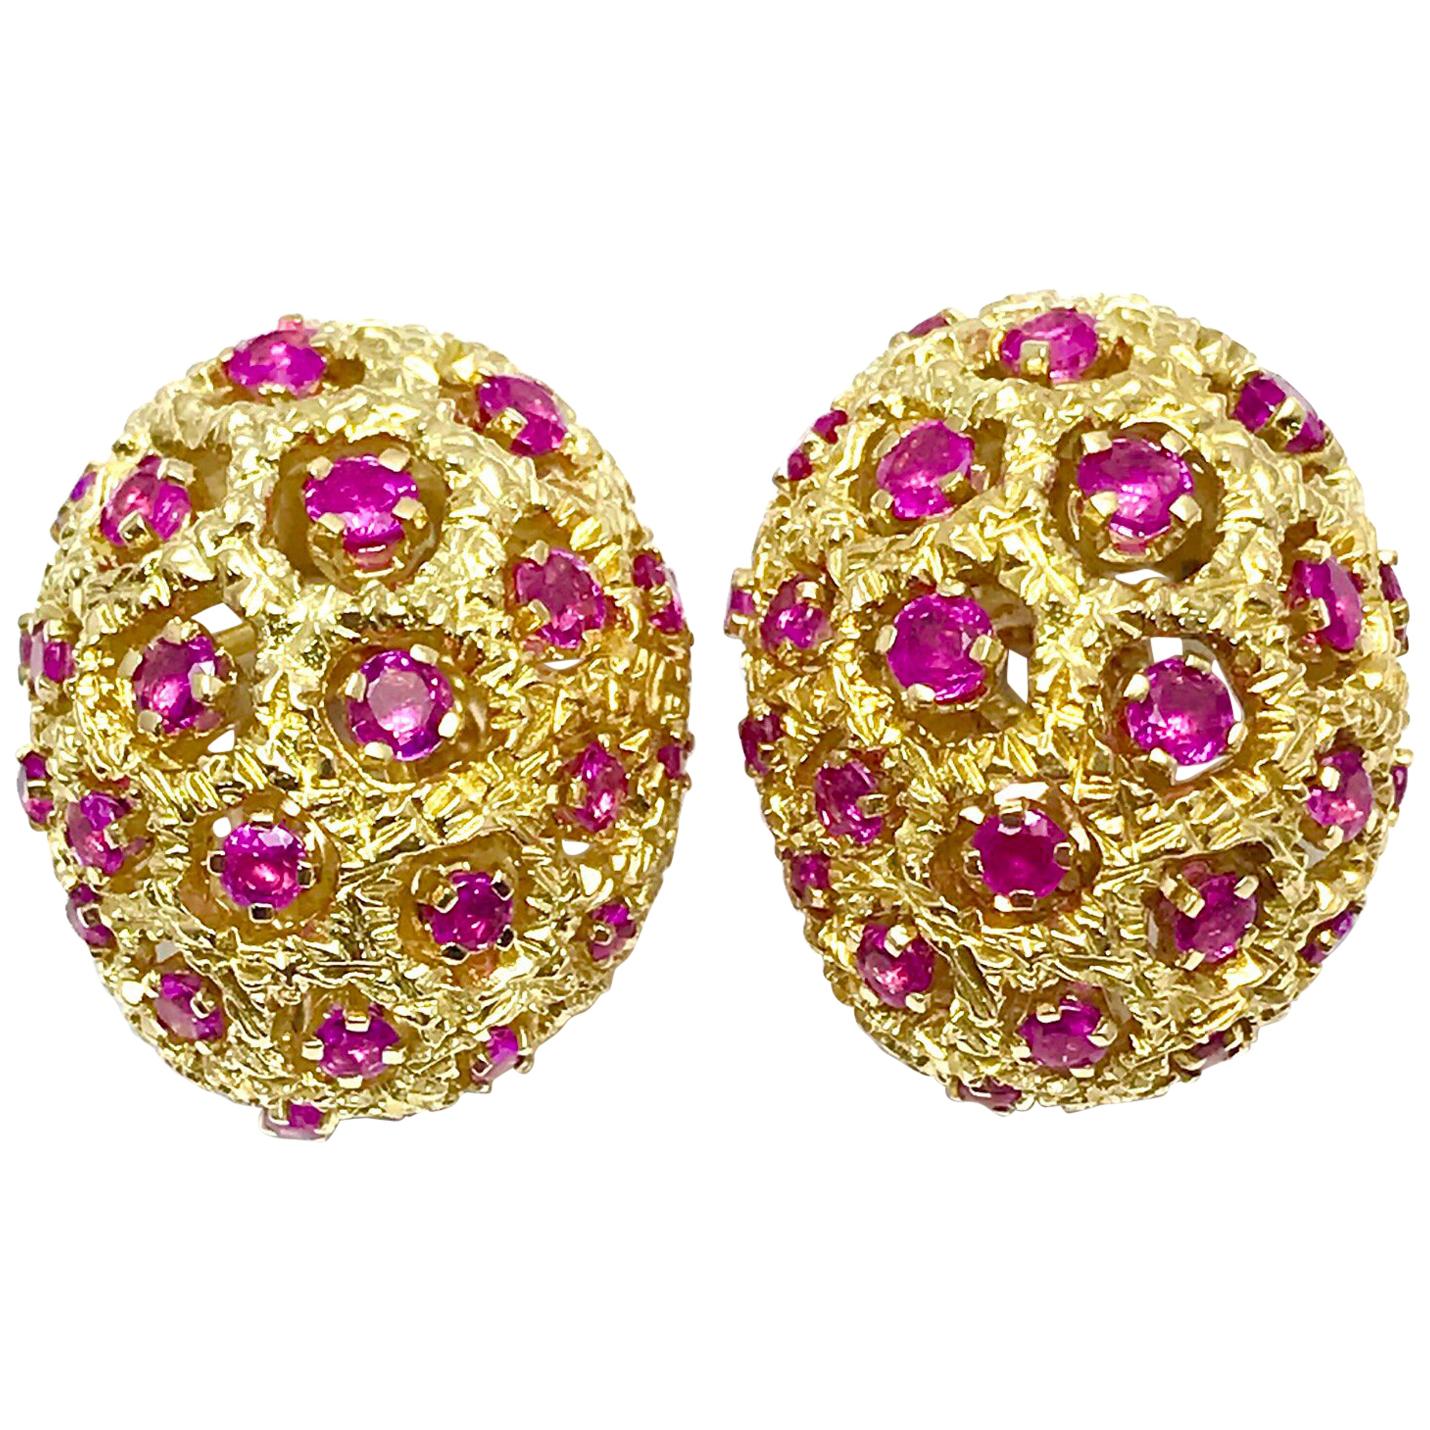 Tiffany & Co. Runder Rubin und 18 Karat Gelbgold gewölbte Clip-Ohrringe